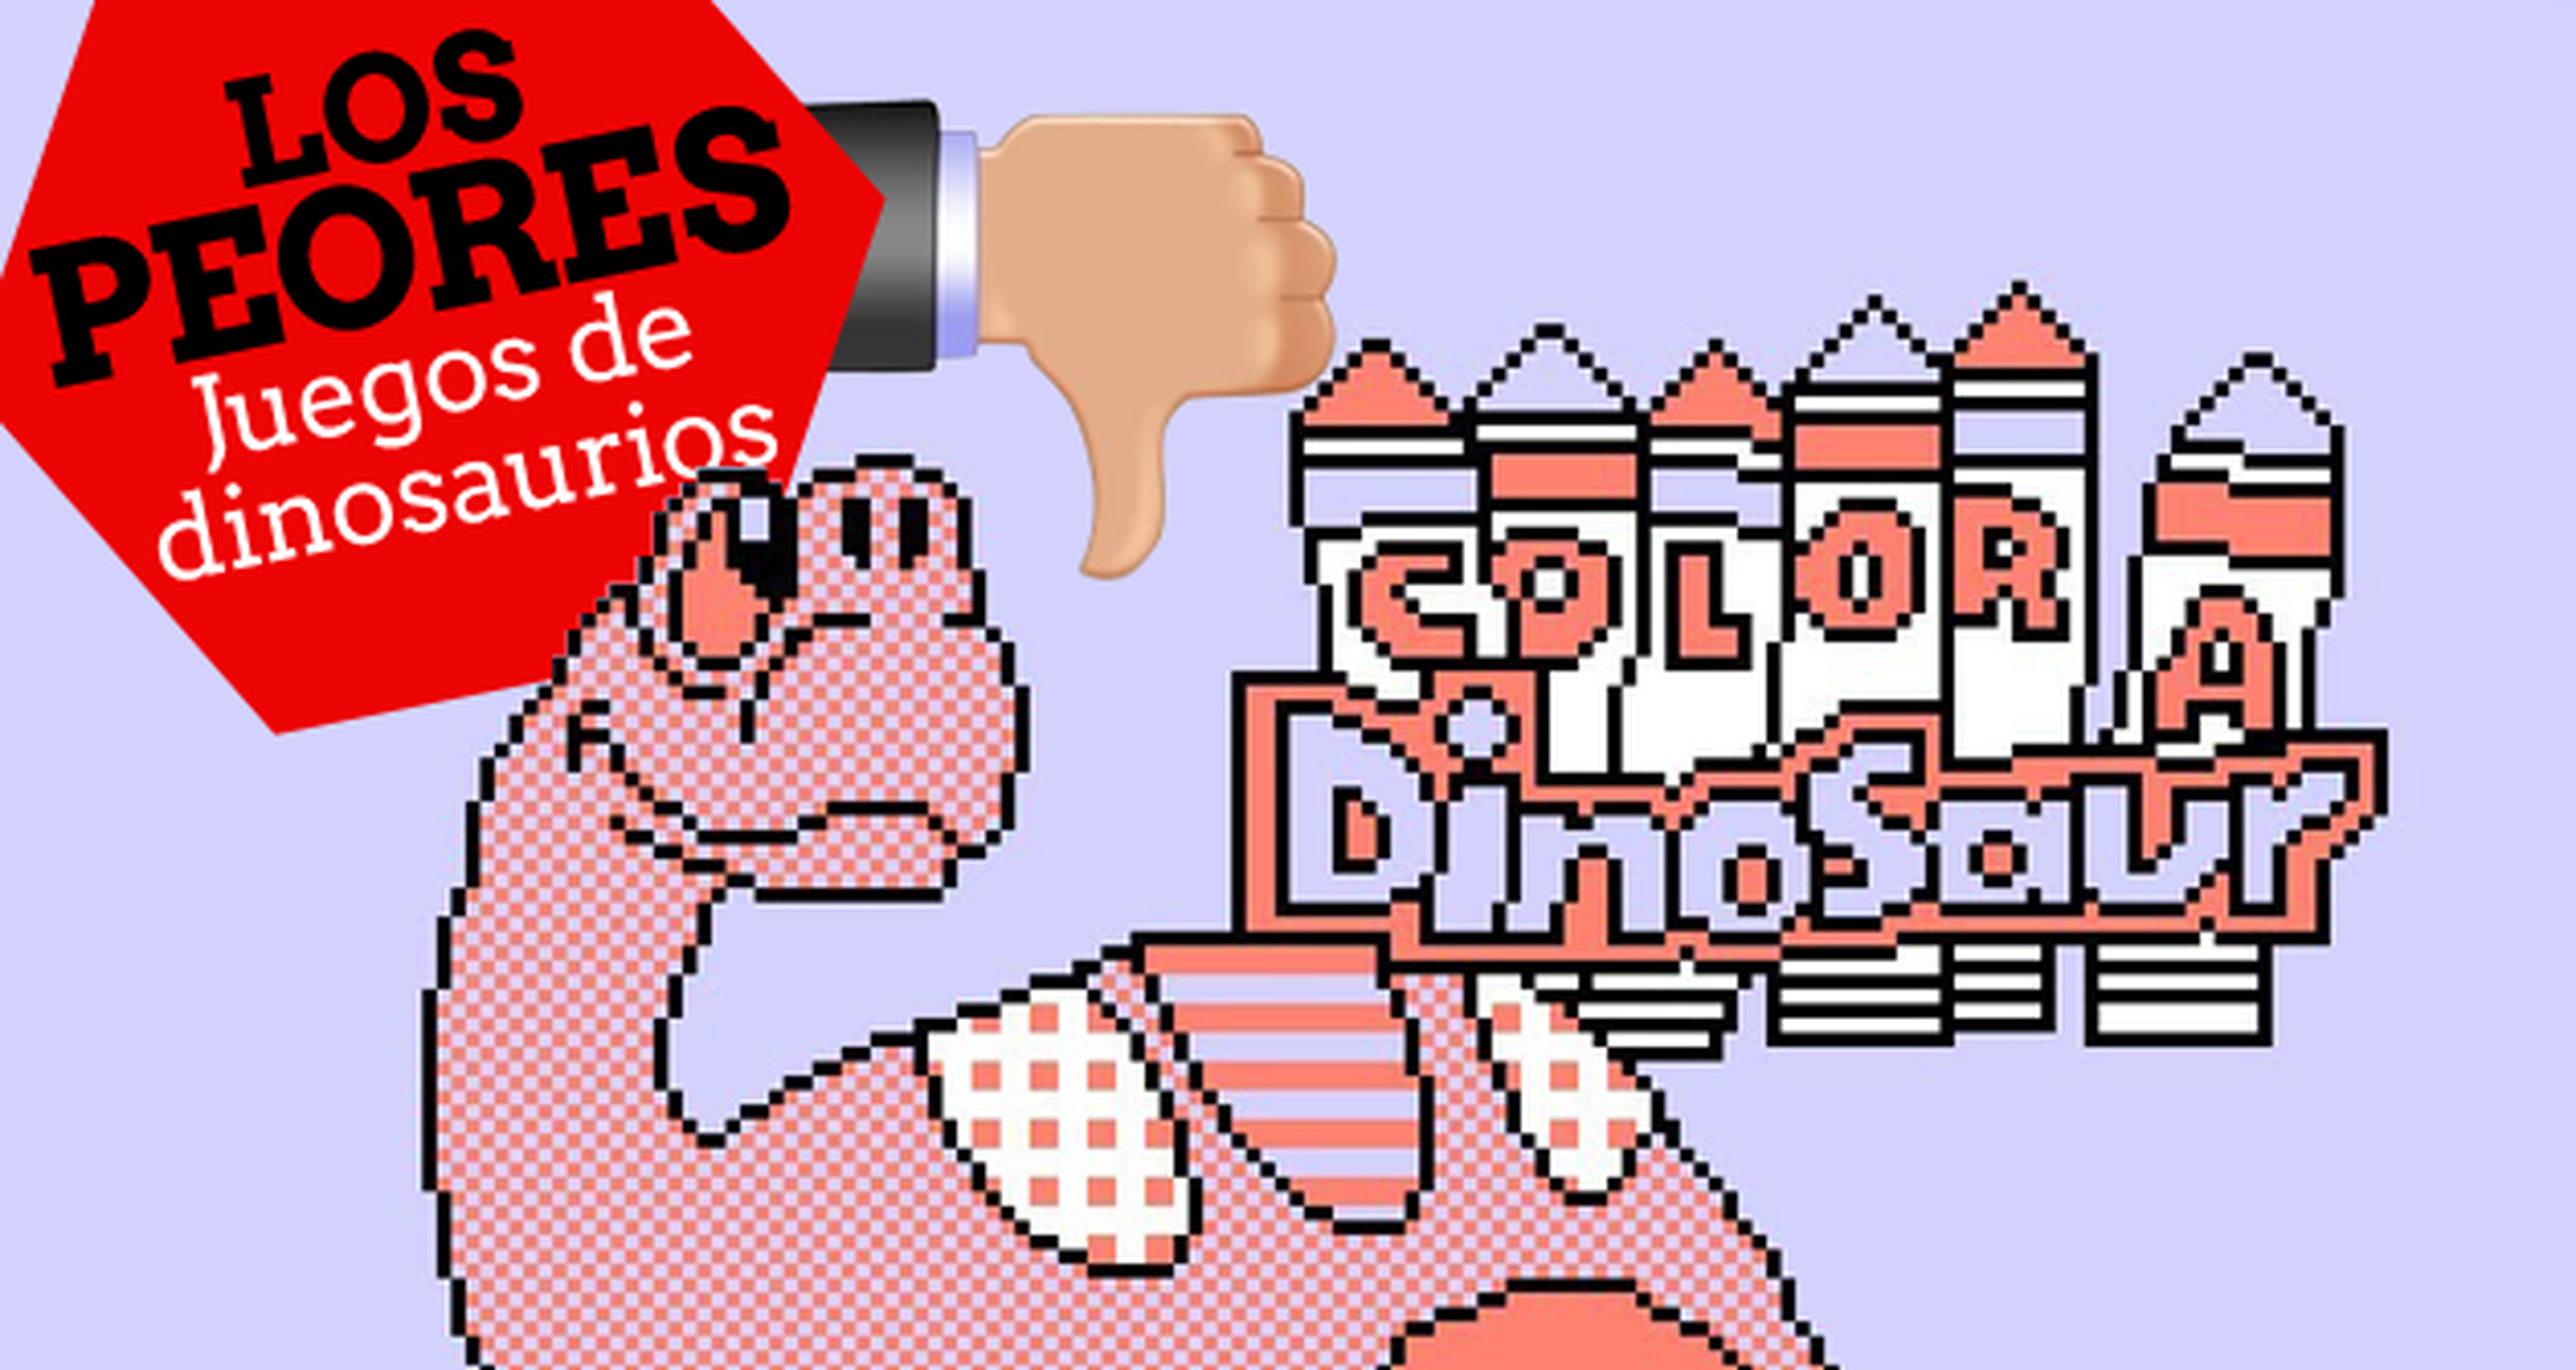 Los 10 peores juegos de dinosaurios